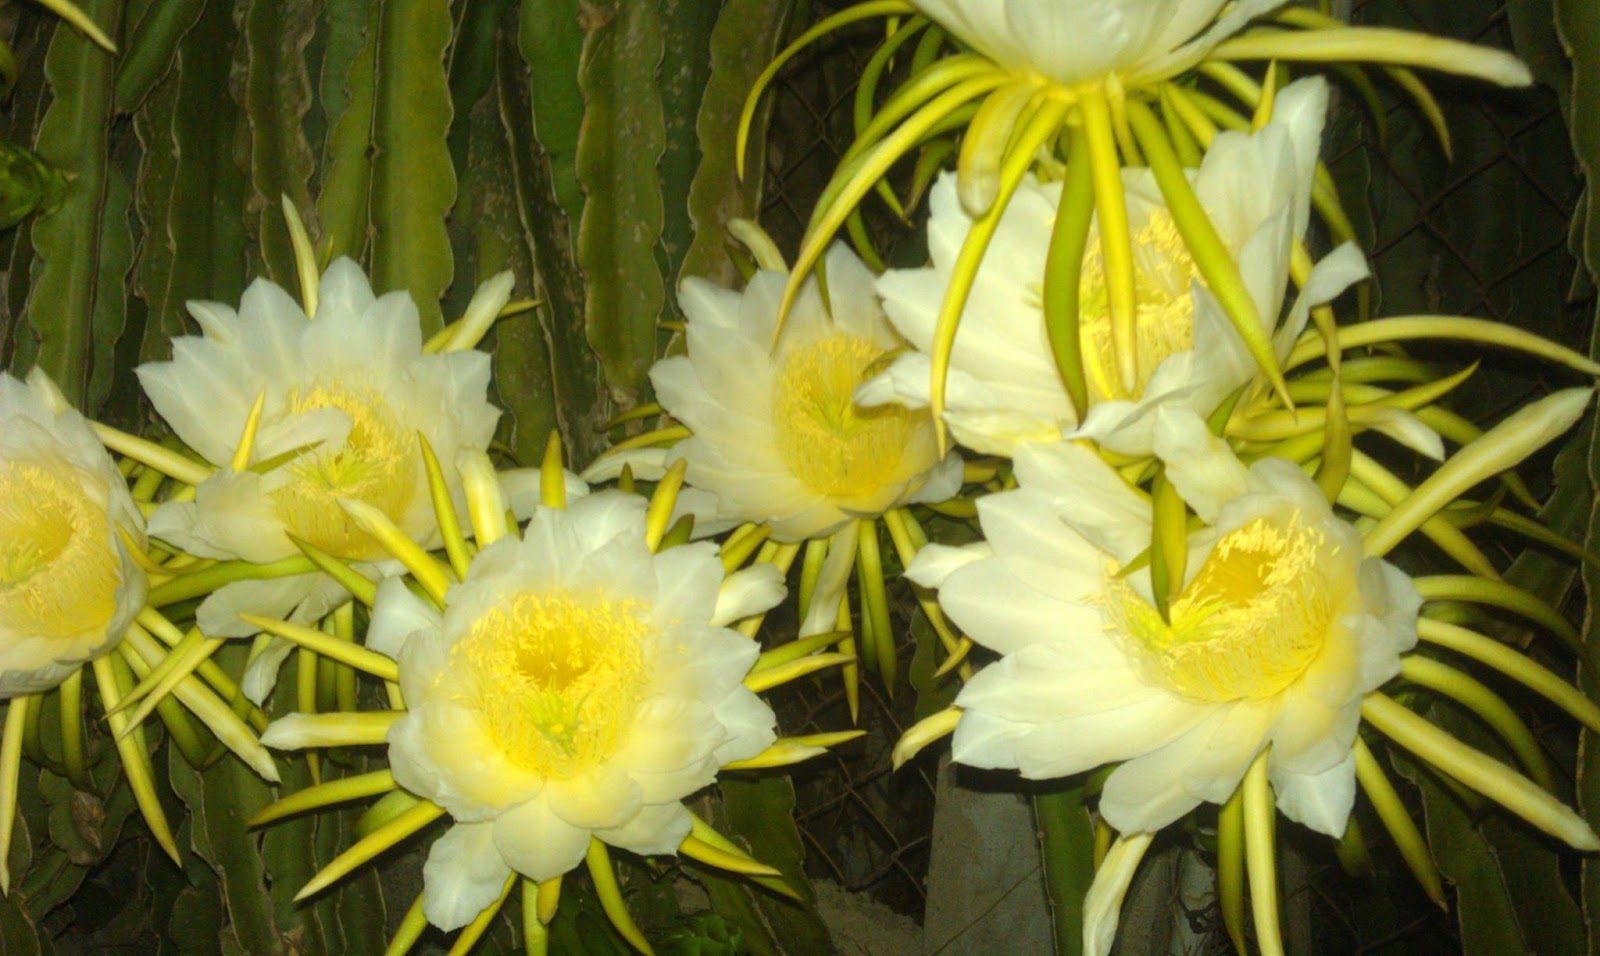 Tổng hợp những hình ảnh đẹp nhất về hoa thanh long - [Kích thước hình ảnh: 1600x956 px]